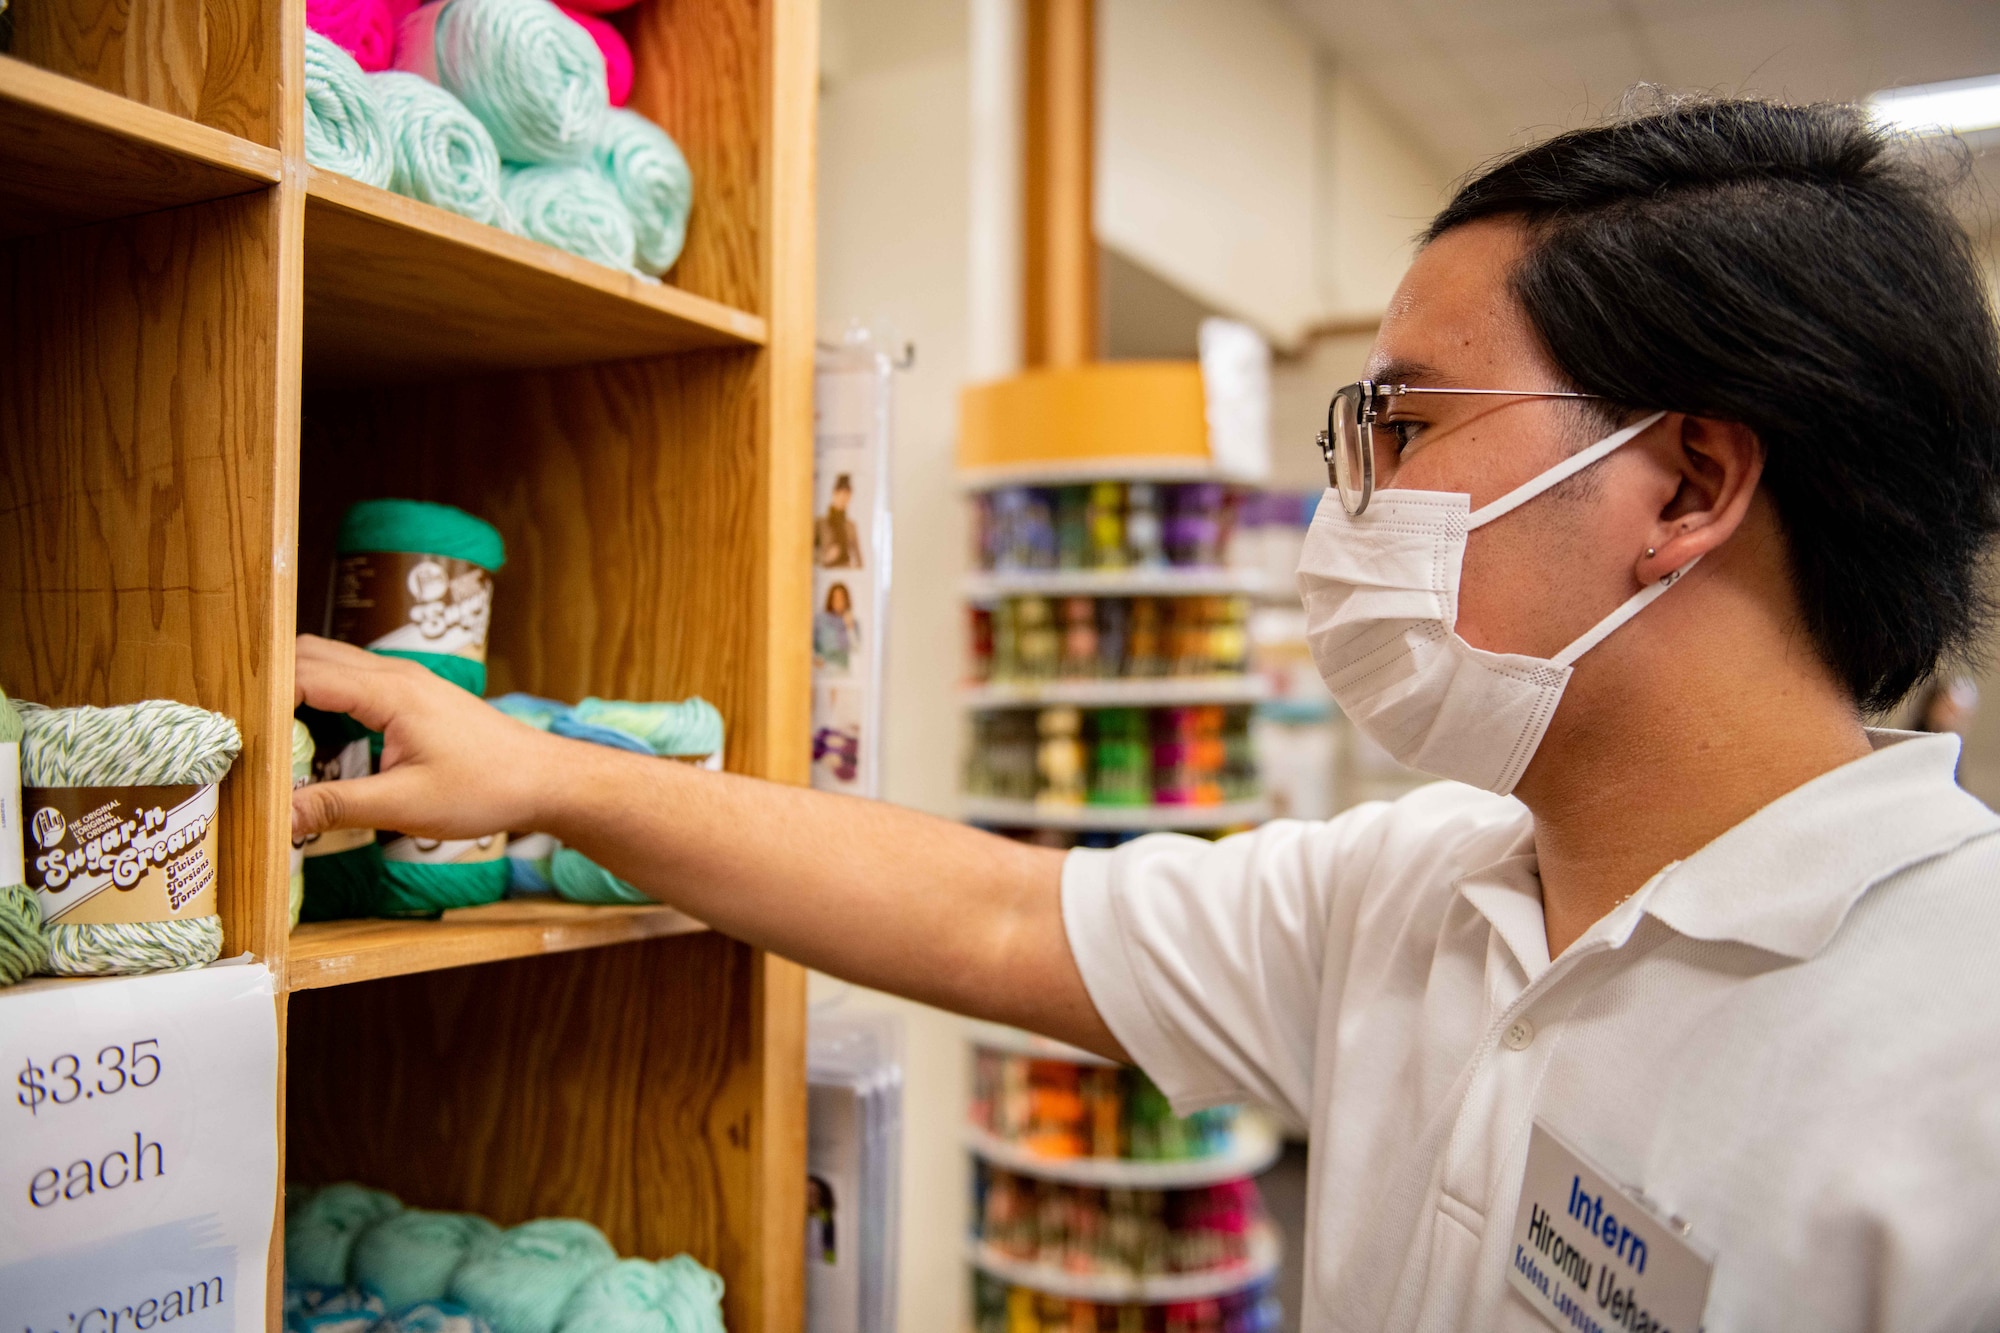 A Japanese boy organizes spools of yarn inside a cupboard